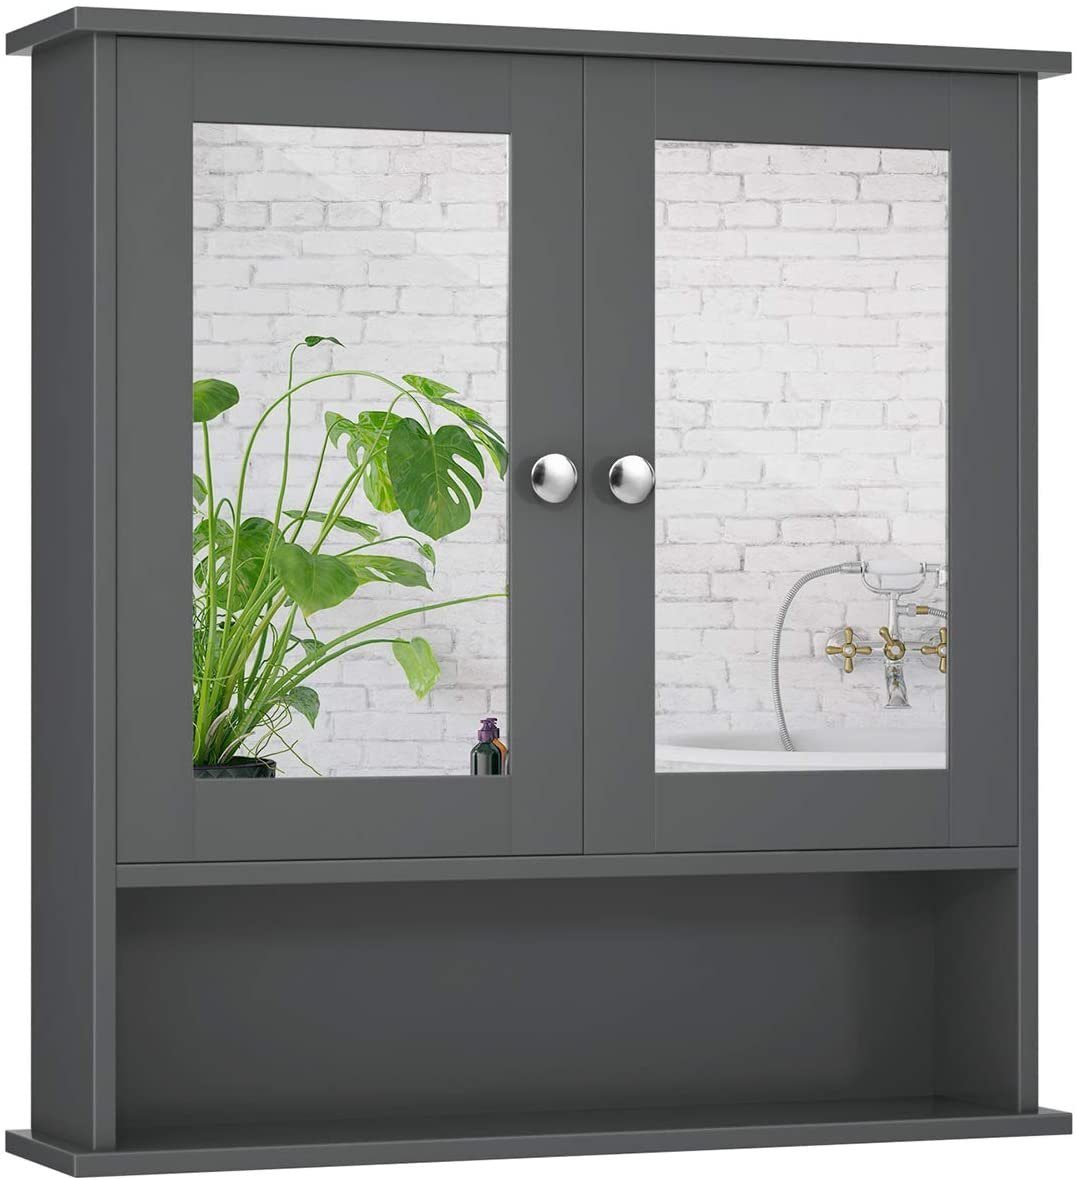 COSTWAY Spiegelschrank Badzimmerschrank mit höhenverstellbarer Ablage grau